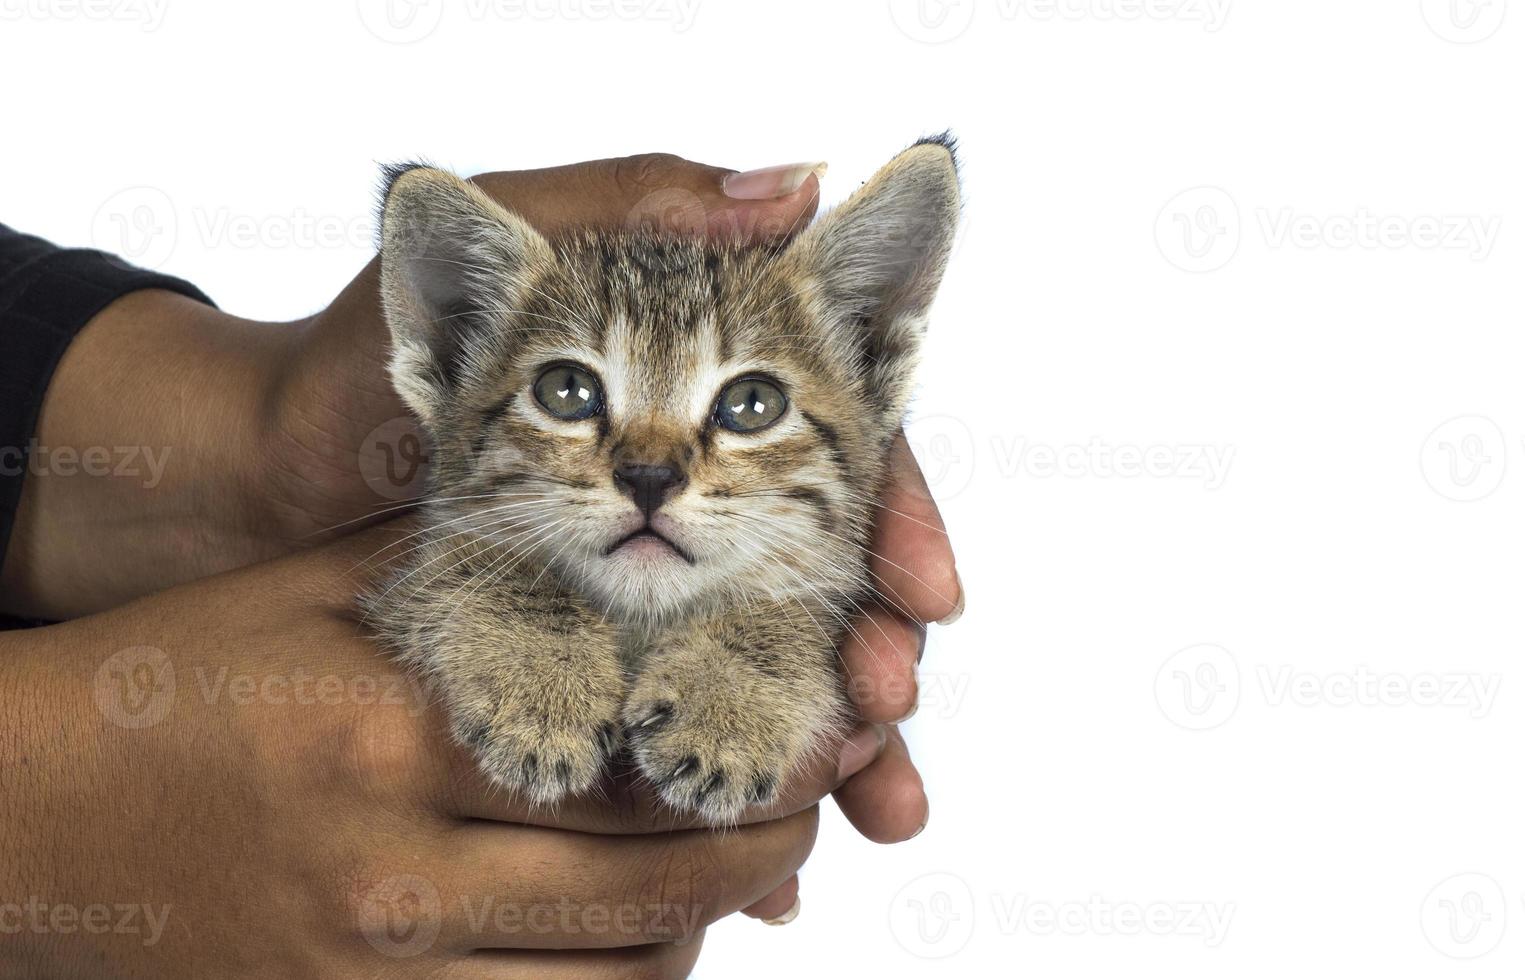 piccolo gattino in mani umane foto